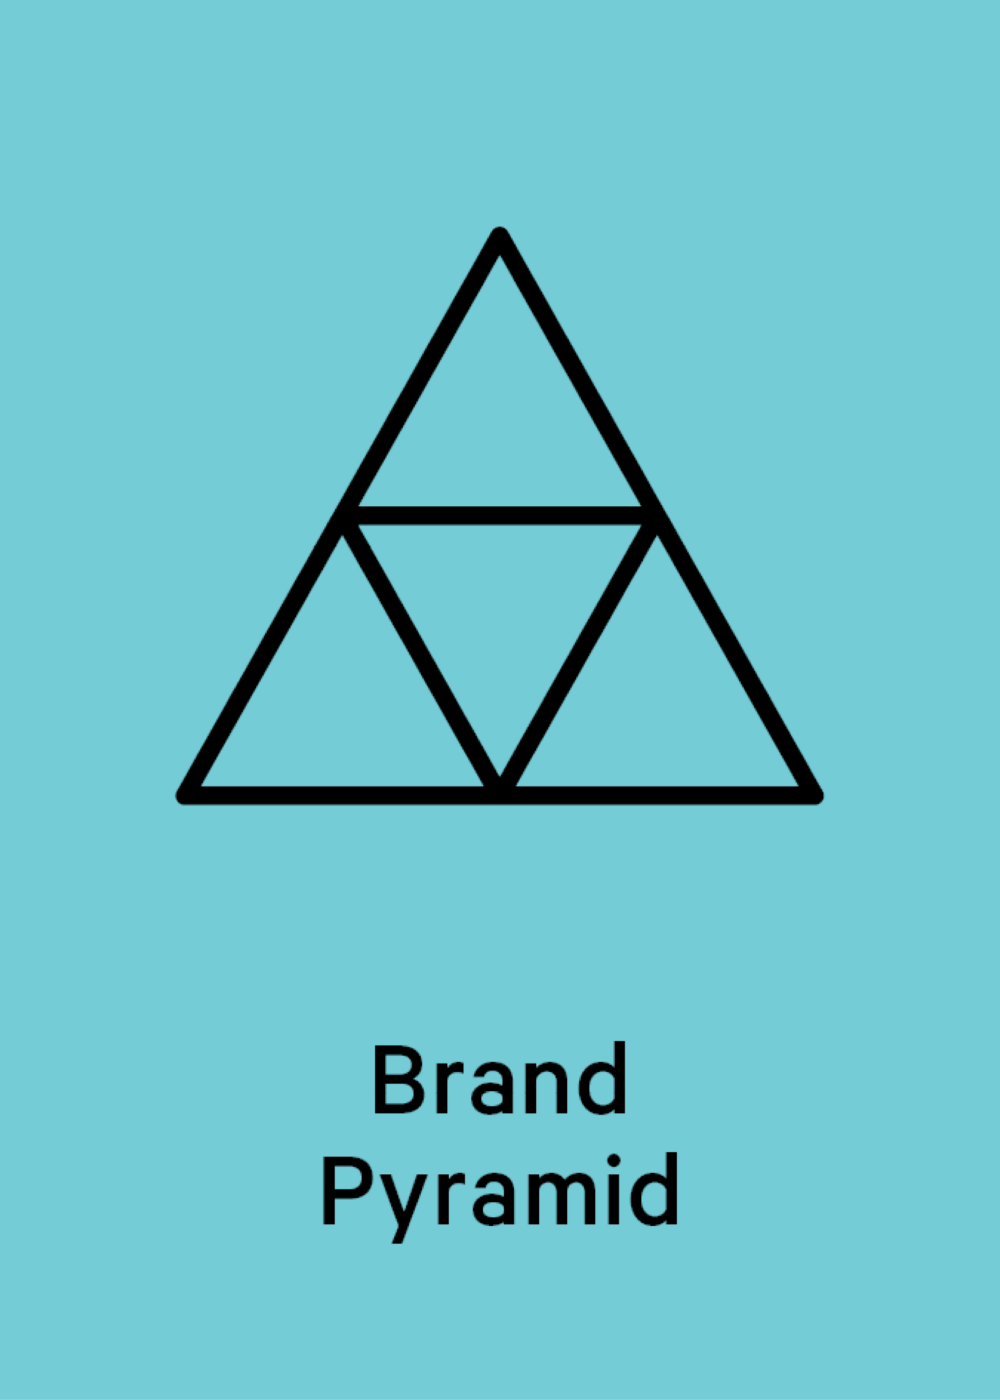 Brand­py­ra­mid Templ News Teaser 1200x670